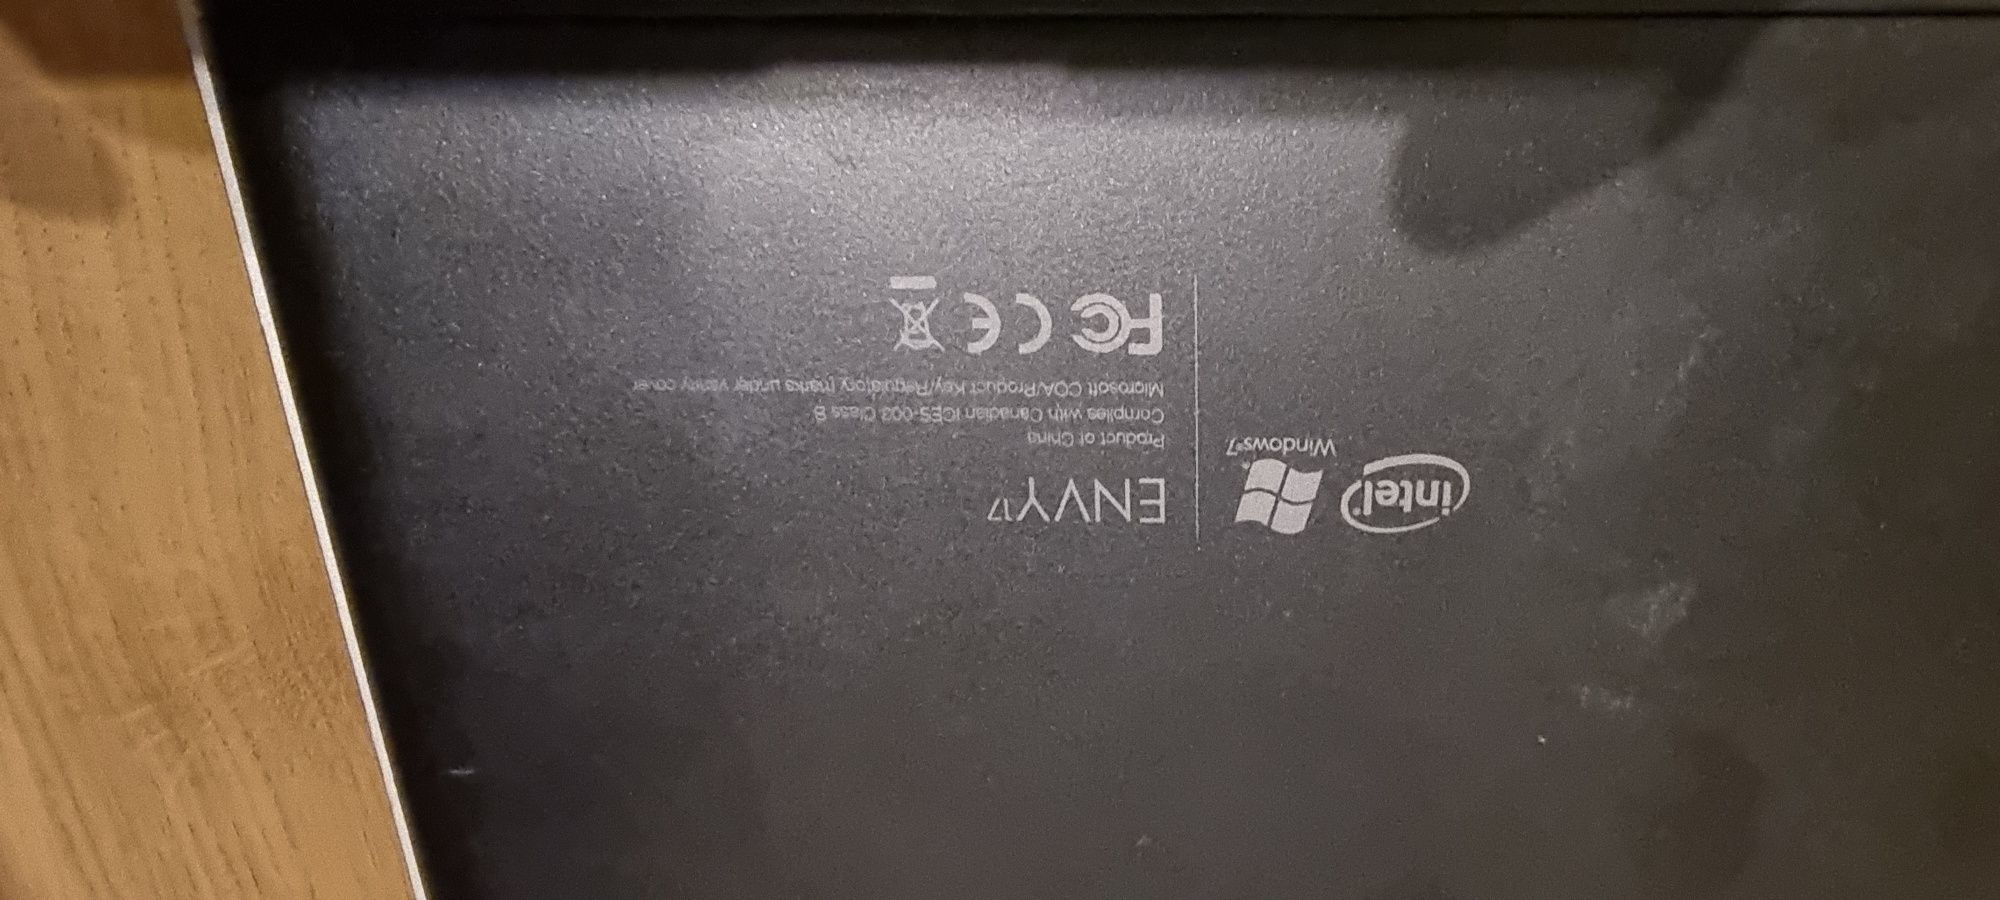 Laptop HP Envy 17 i7 8gb ram dysk 180 ssd Full HD 17